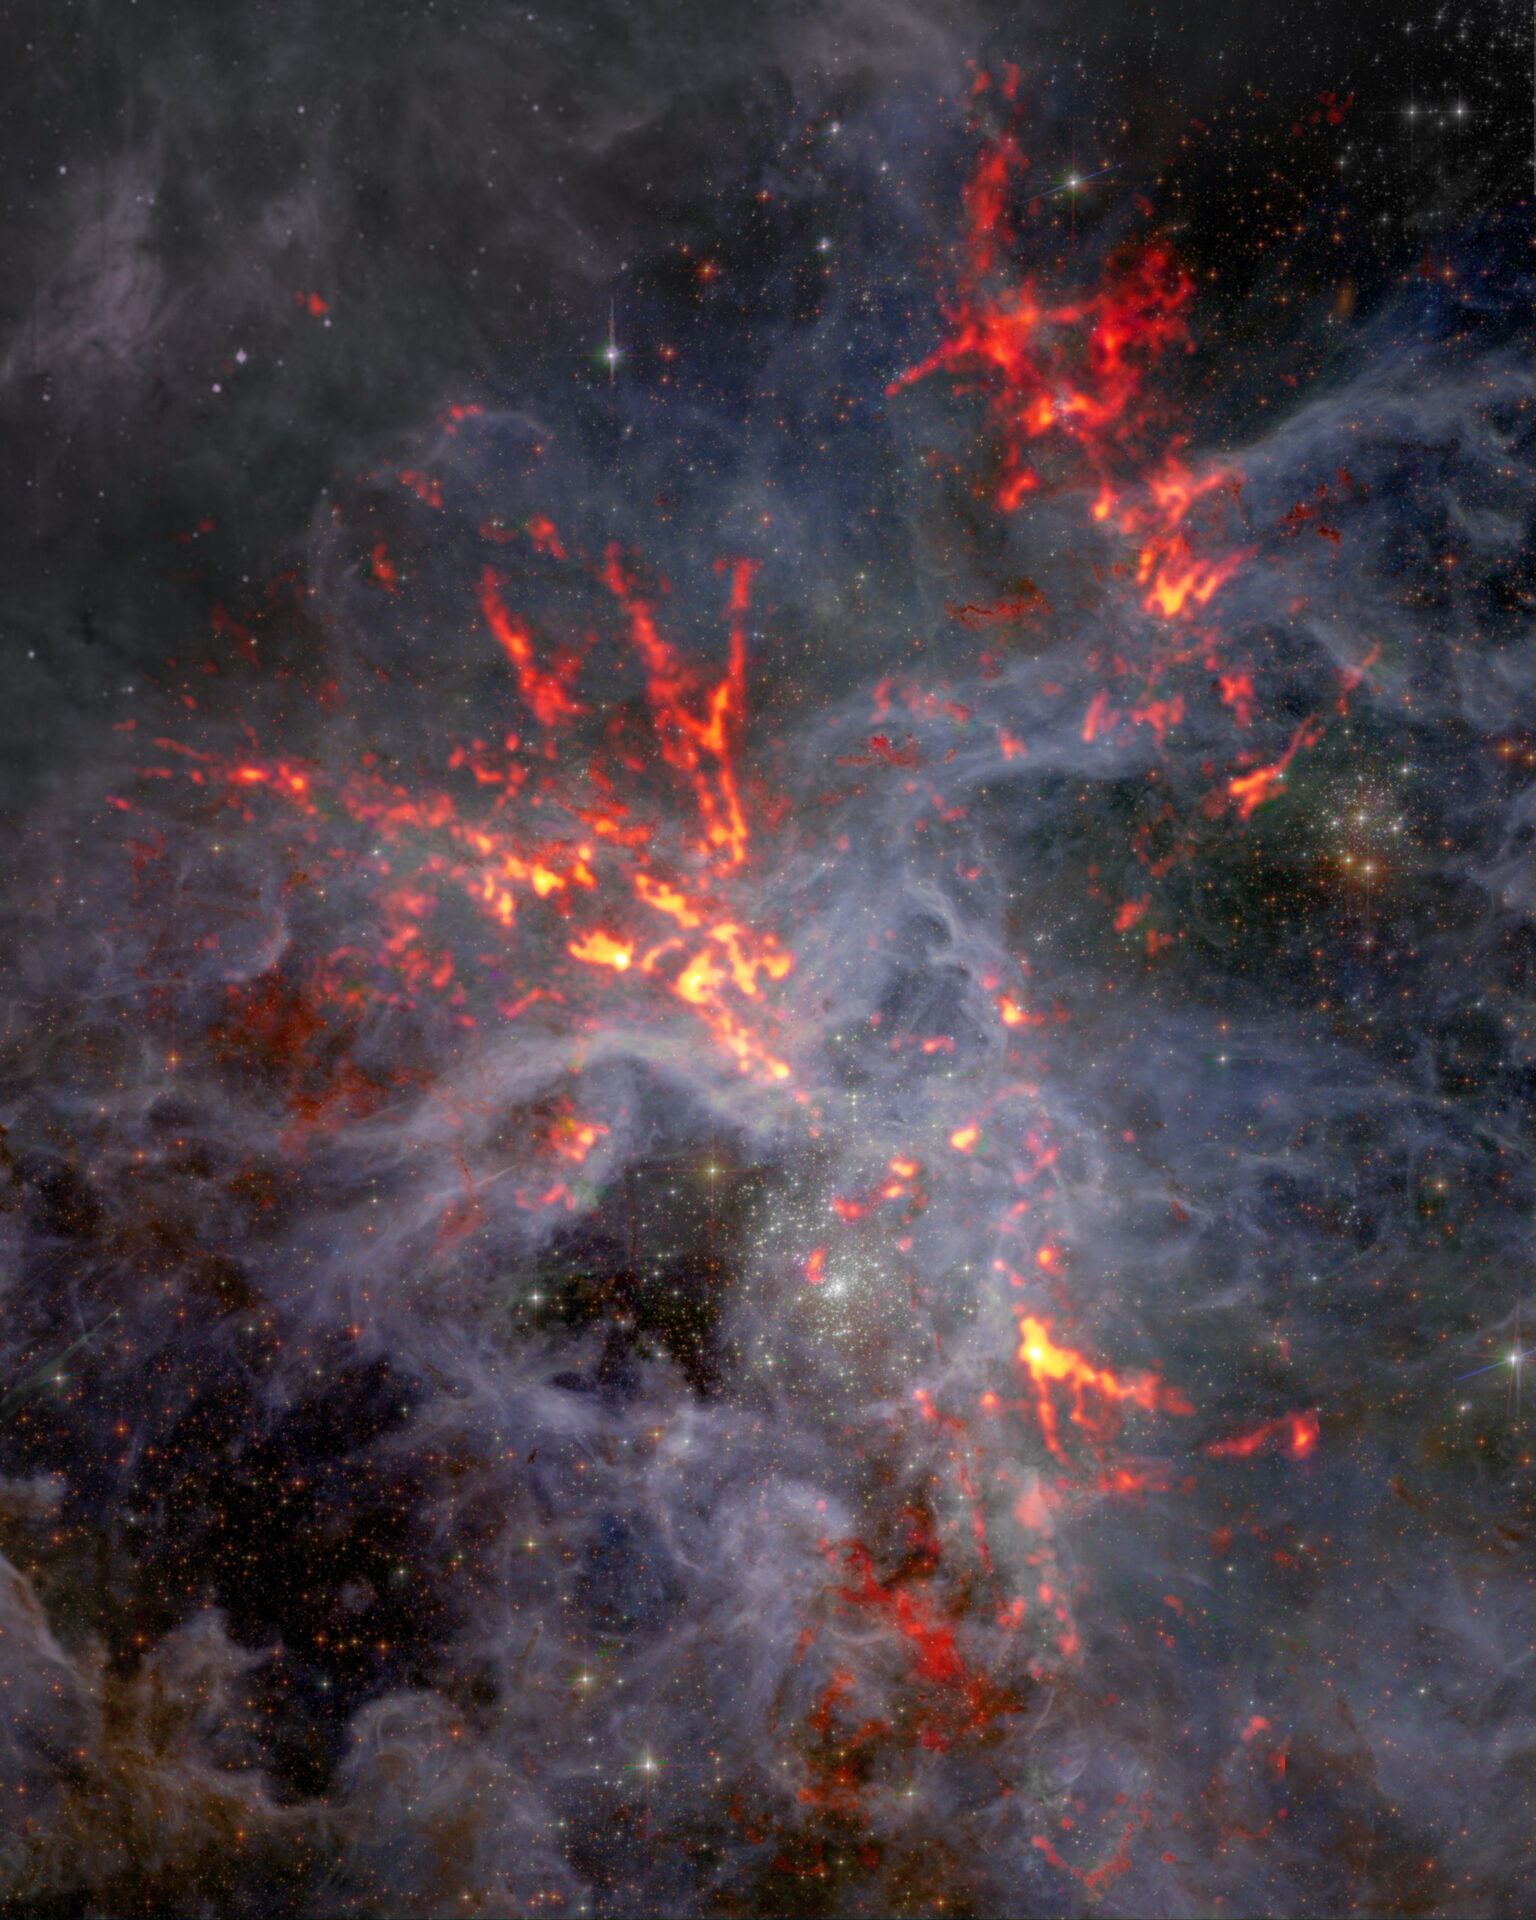 <p>30 Doradus es una gran incubadora de estrellas ubicada en el corazón de la Nebulosa de la Tarántula. En esta imagen compuesta, los datos de ondas milimétricas del Atacama Large Millimeter/submillimeter Array (ALMA), correspondientes a los filamentos en naranja y rojo, figuran contrapuestos a los datos ópticos del telescopio espacial Hubble. Un equipo de investigación que observó 30 Dor descubrió que, pese a la intensa retroalimentación estelar (que suele causar una disminución de la tasa de nacimiento de estrellas), la gravedad sigue afectando la región y permitiendo que se formen nuevas estrellas. Créditos: ALMA (ESO/NAOJ/NRAO), T. Wong (U. Illinois, Urbana-Champaign); S. Dagnello (NRAO/AUI/NSF)</p>
